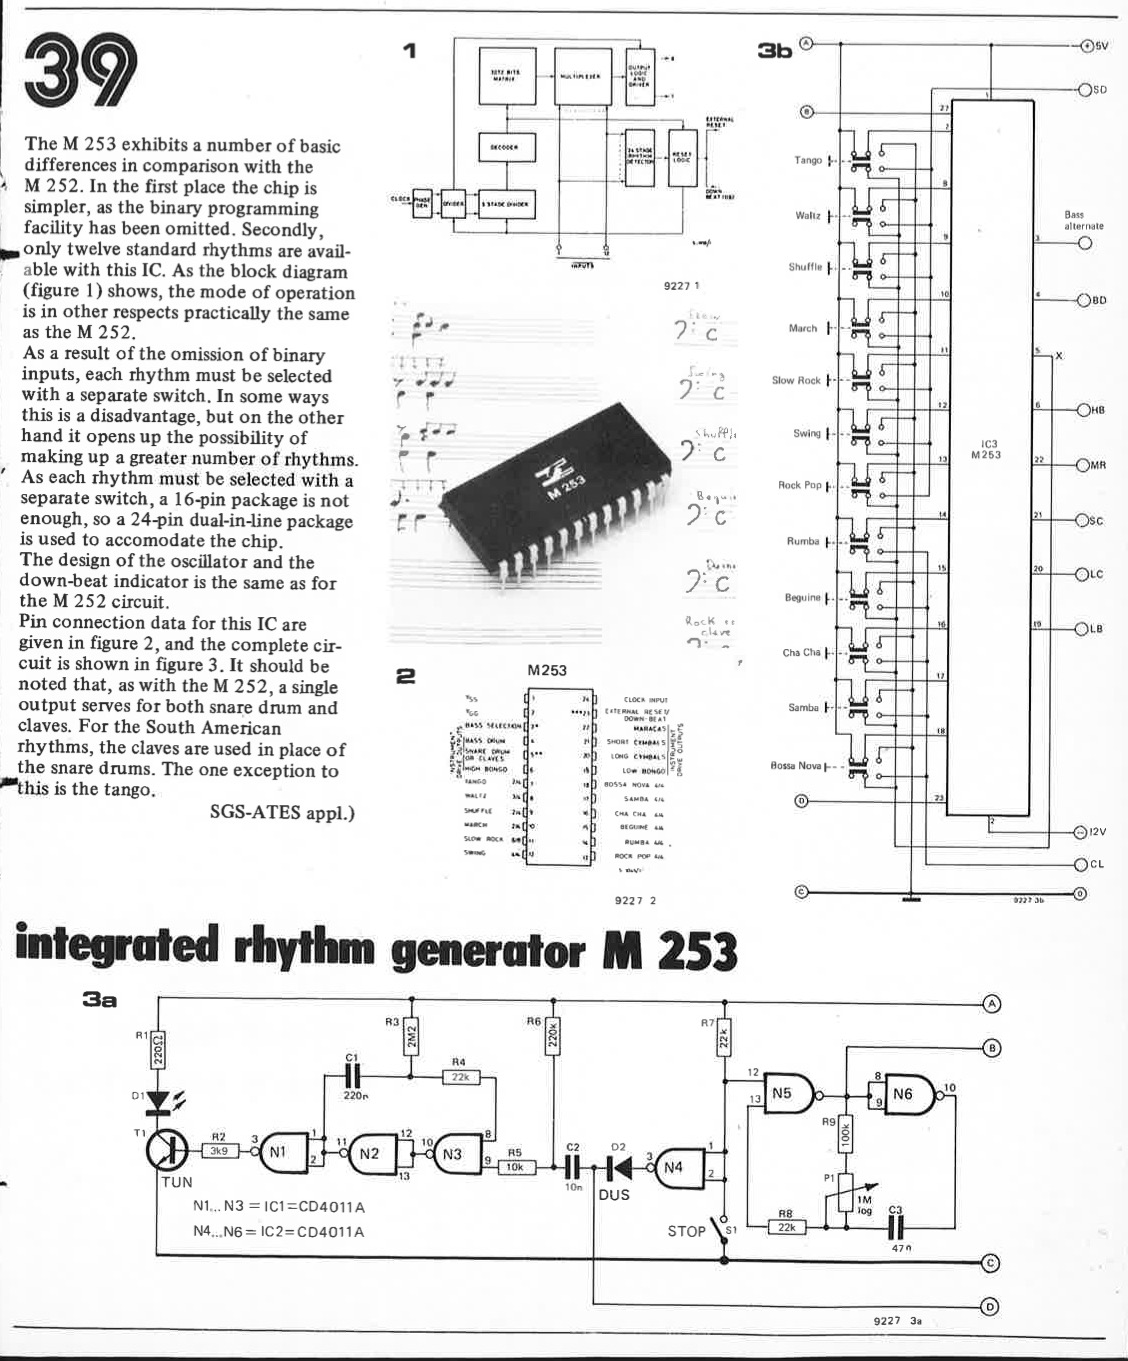 rhythm generator M 253